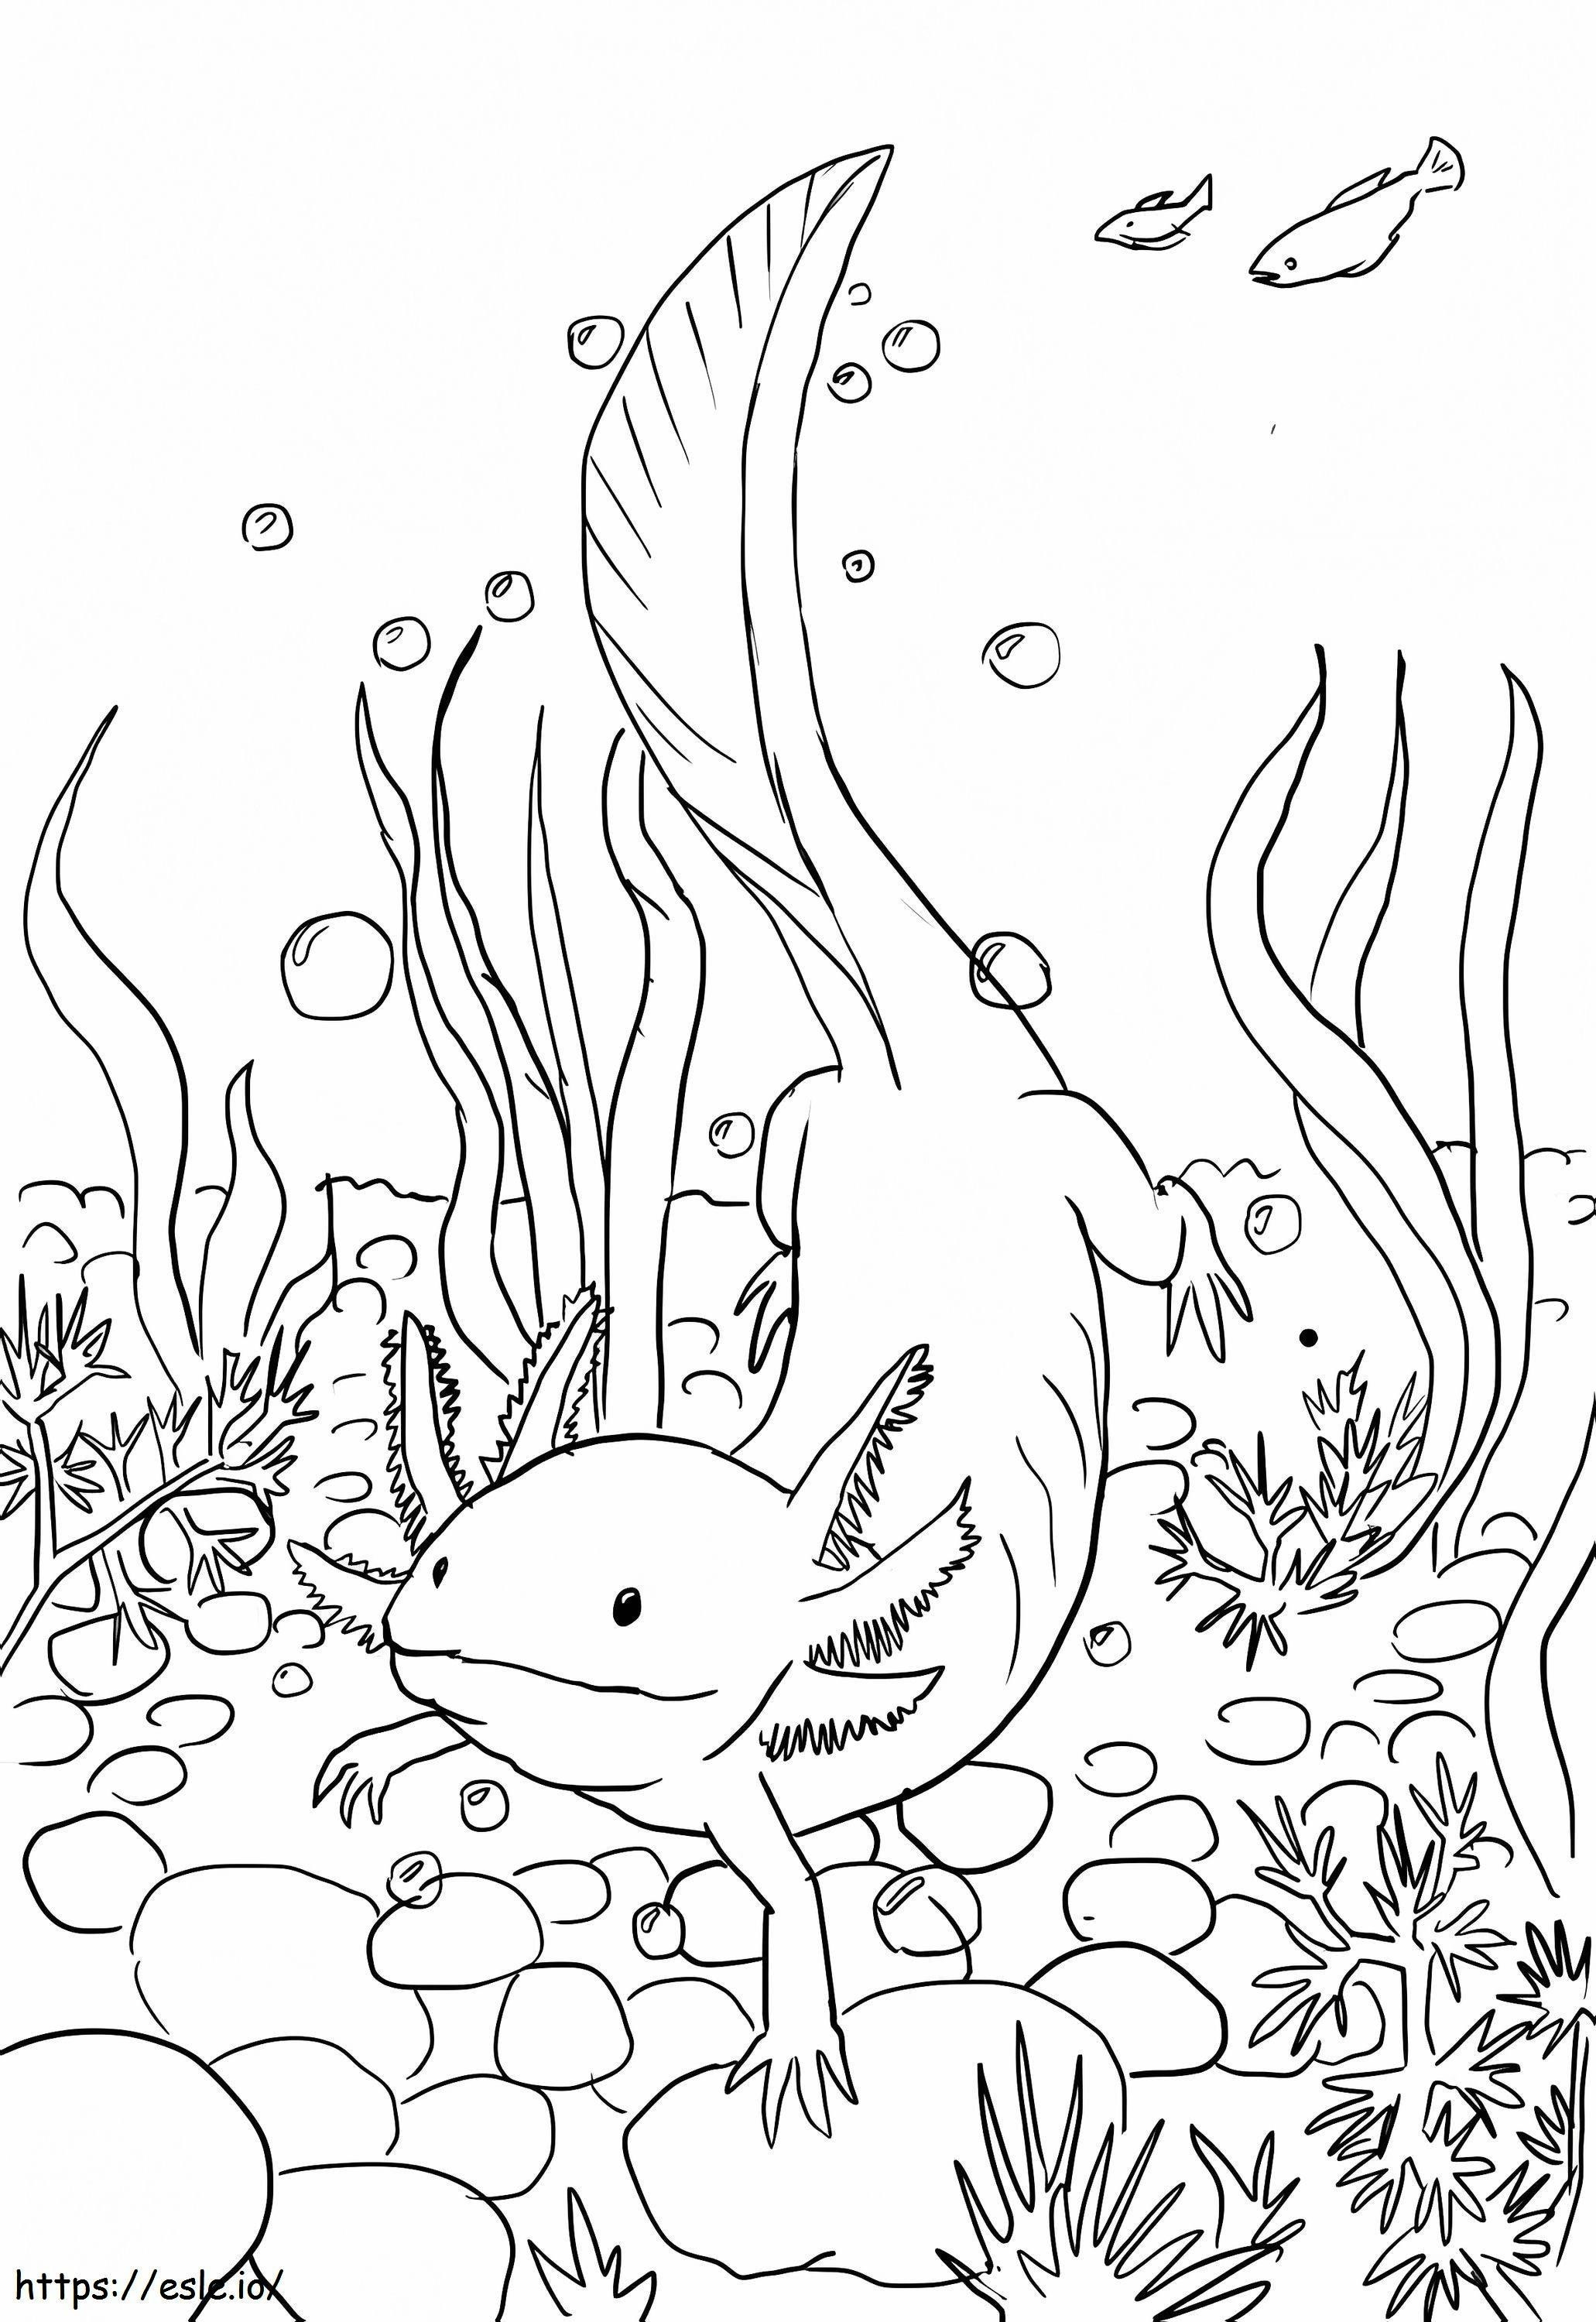 Axolotl Înot de colorat